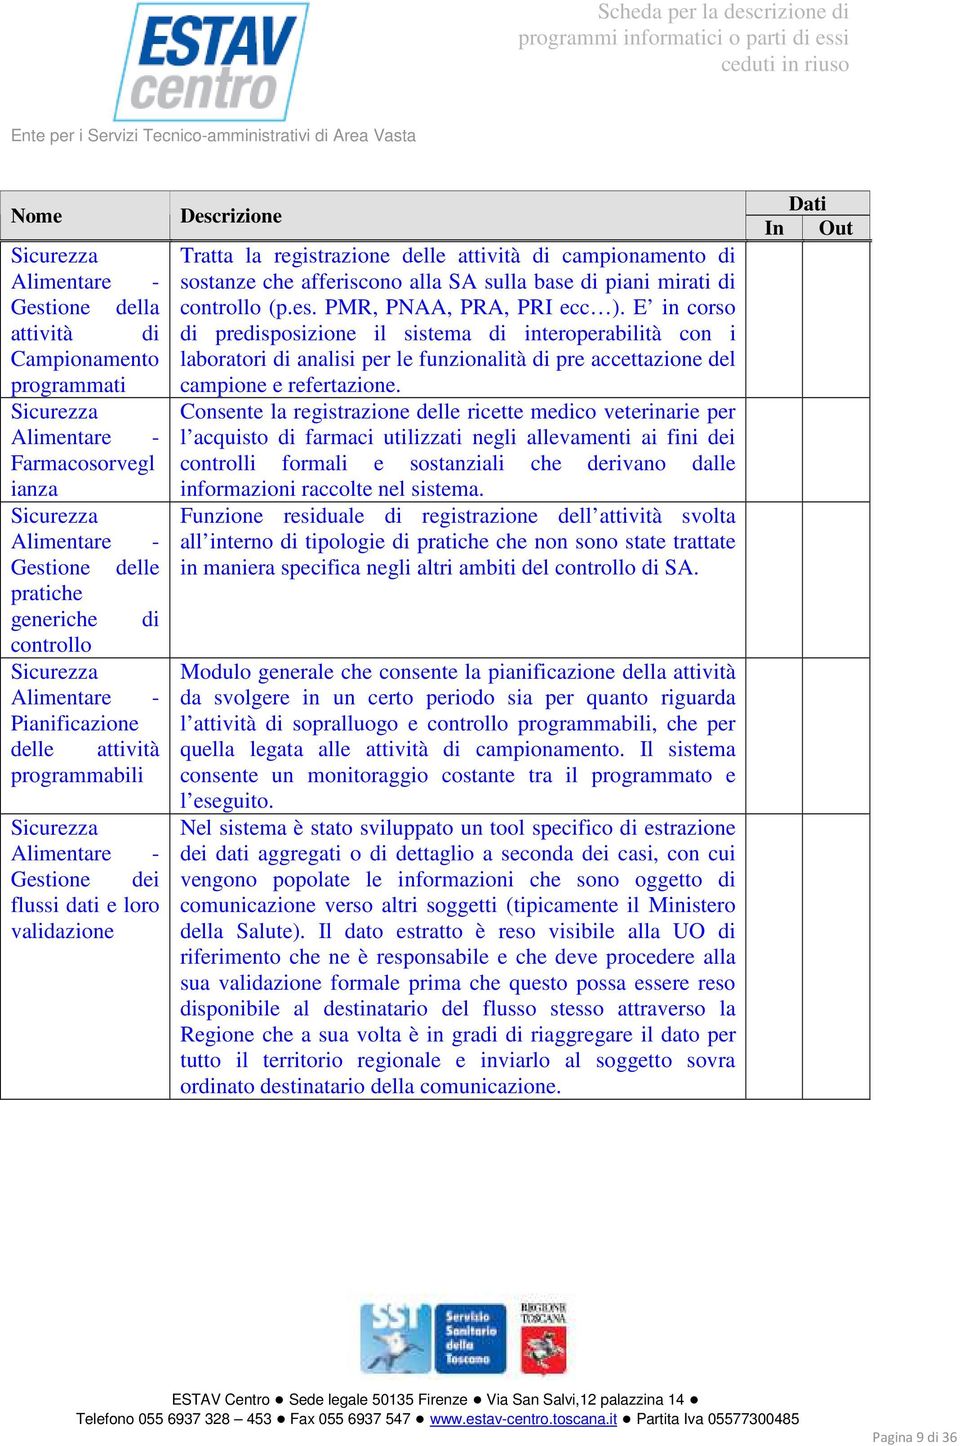 campionamento di sostanze che afferiscono alla SA sulla base di piani mirati di controllo (p.es. PMR, PNAA, PRA, PRI ecc ).